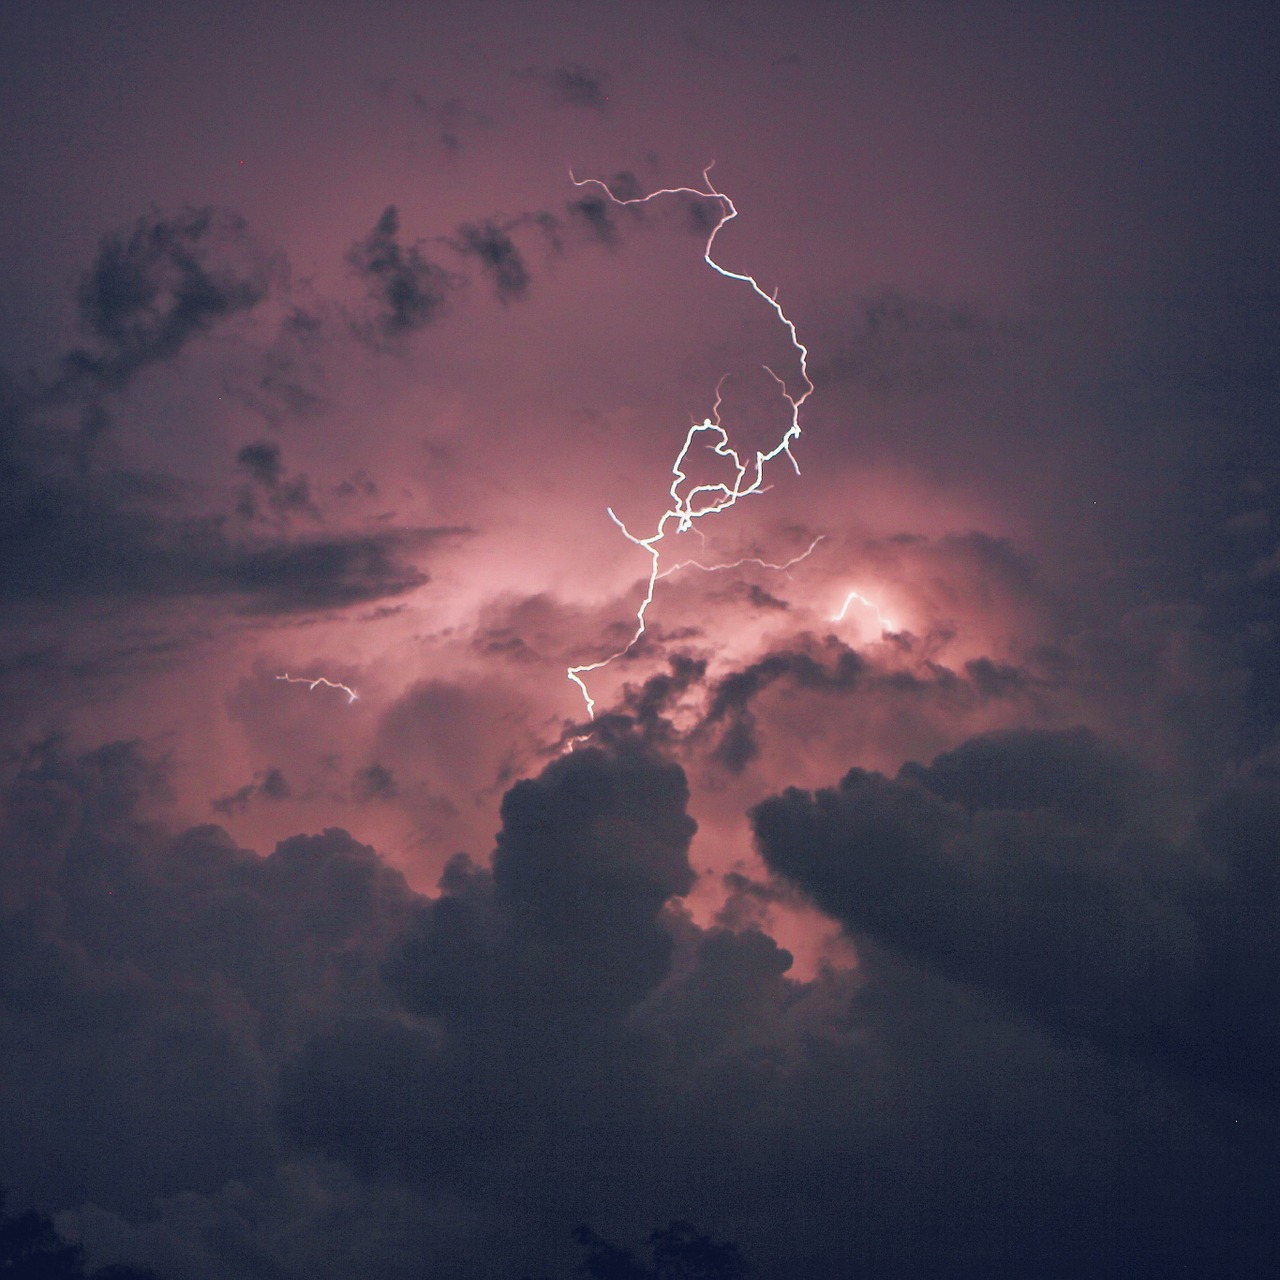 lightning thunder storm free photo